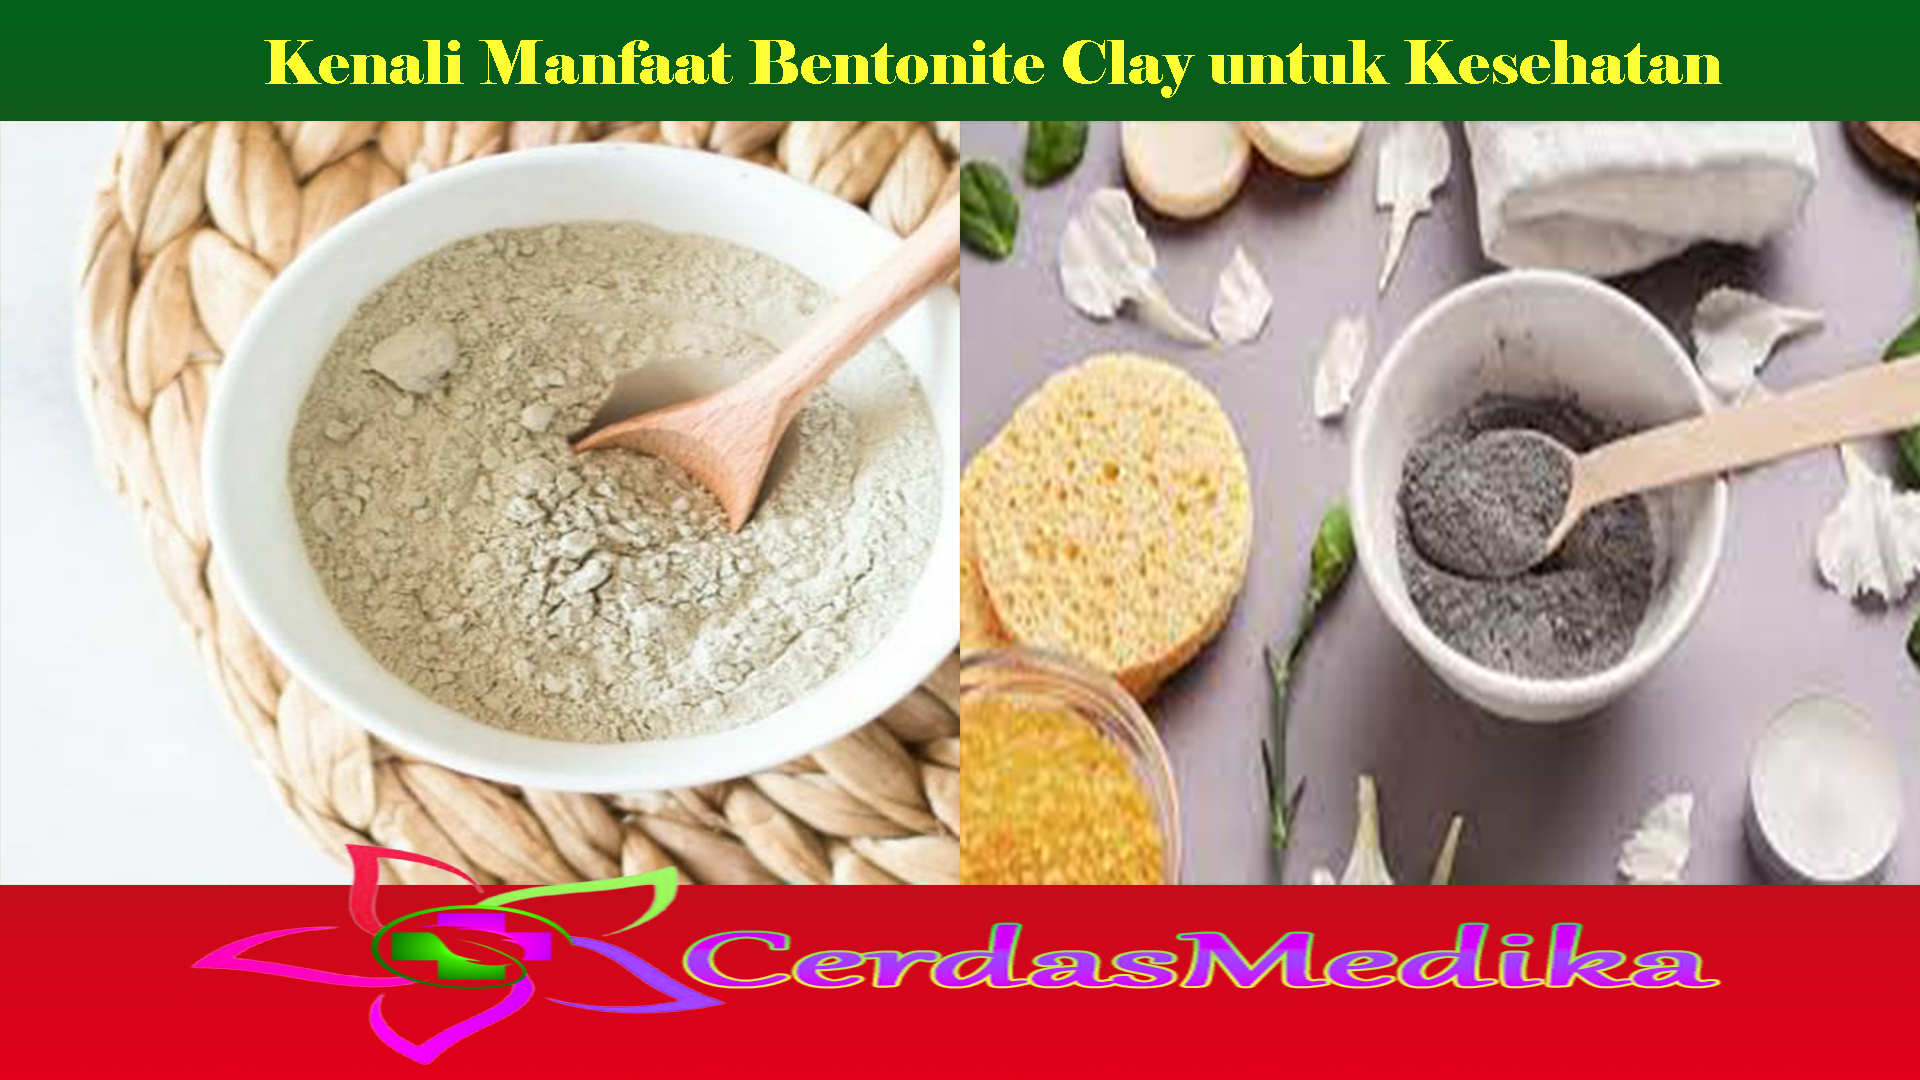 Kenali Manfaat Bentonite Clay untuk Kesehatan